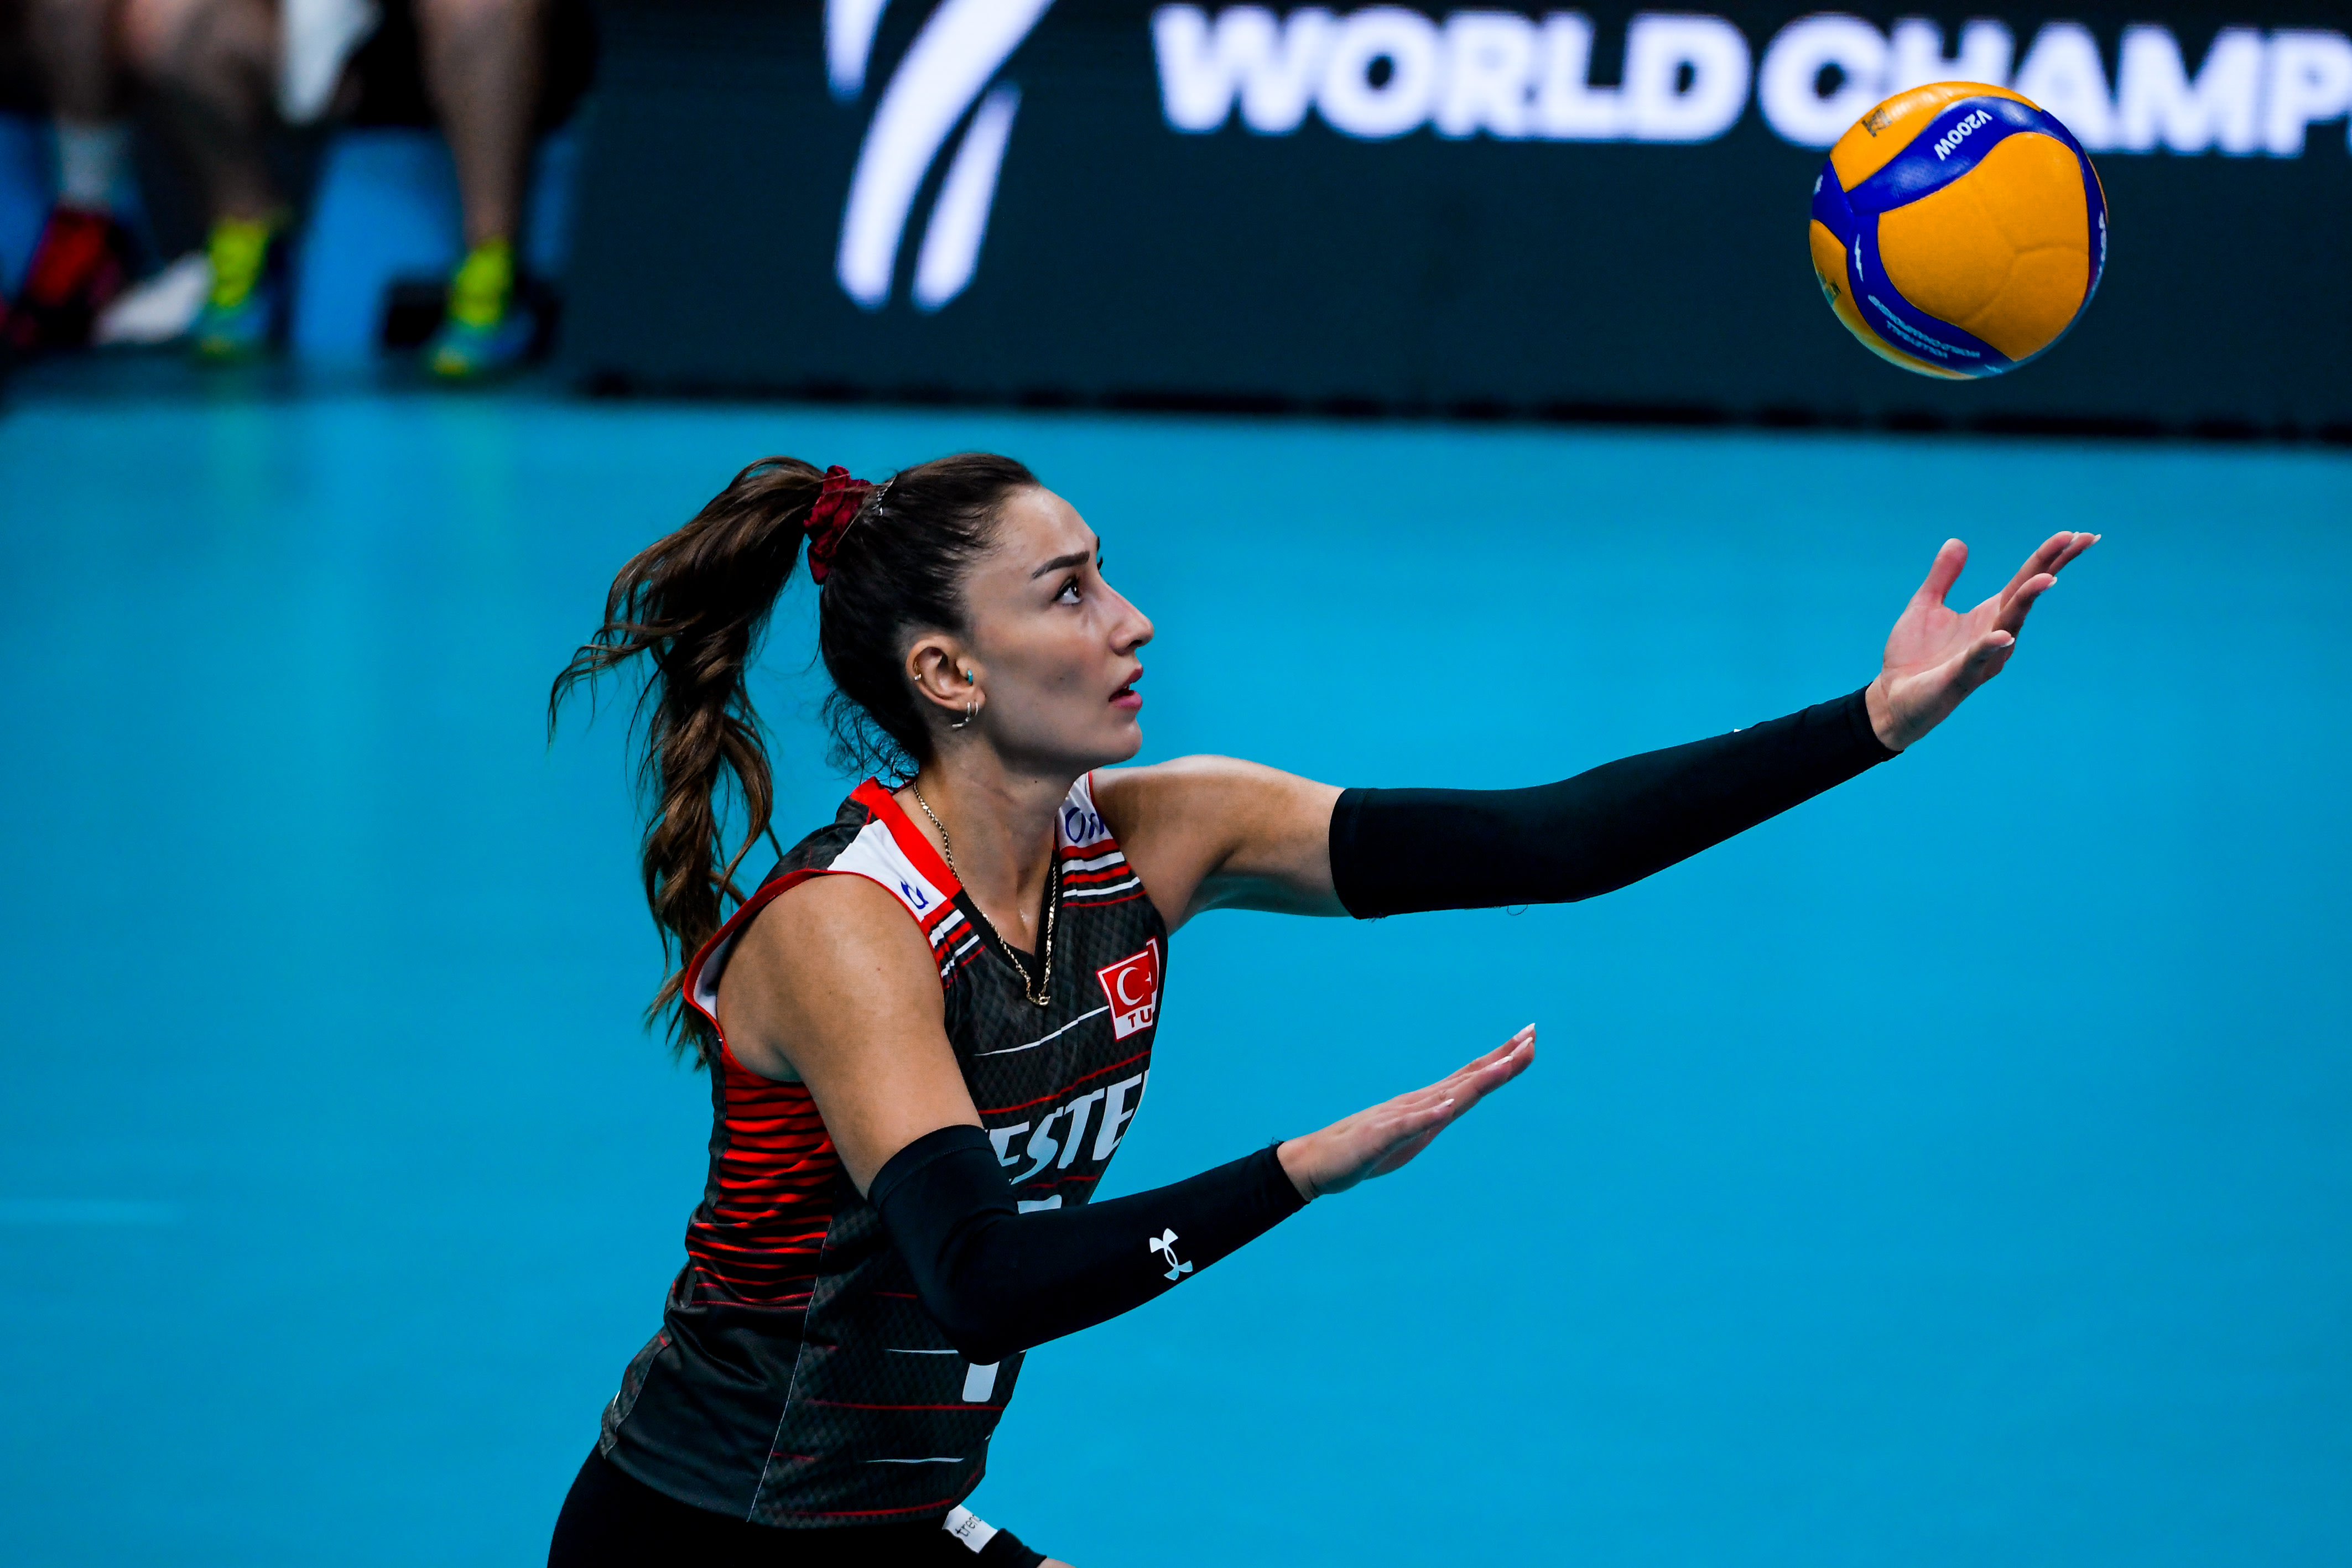 Türkiye score first World Championship win volleyballworld